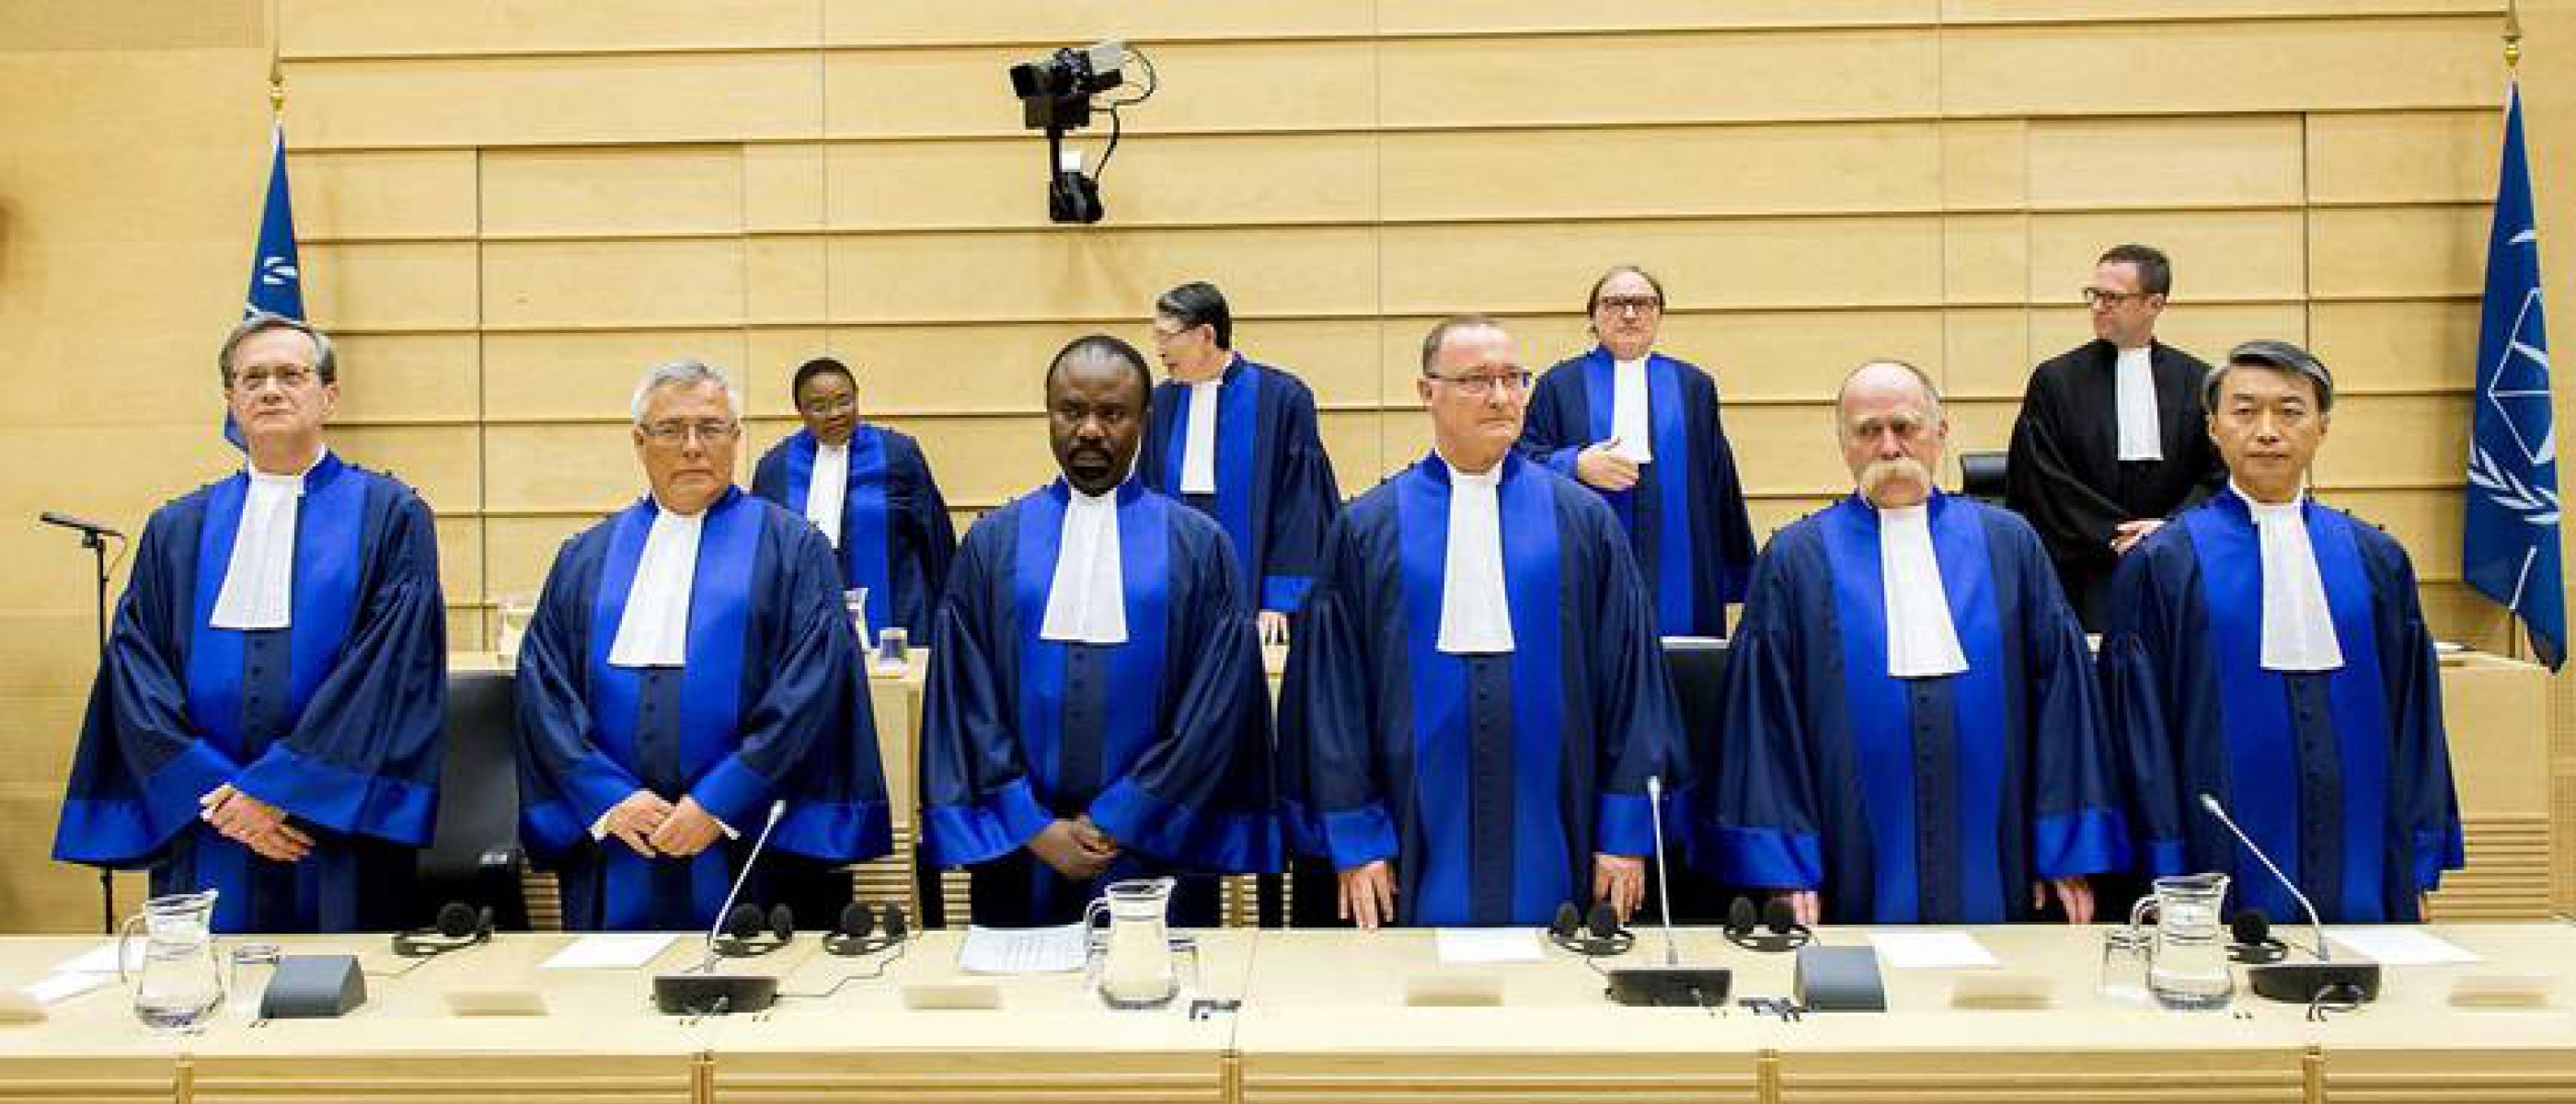 Суда гааги. Международный трибунал в Гааге. Международный суд ООН. Римский статут международного уголовного суда. Прокурор Гаагского трибунала Африка.